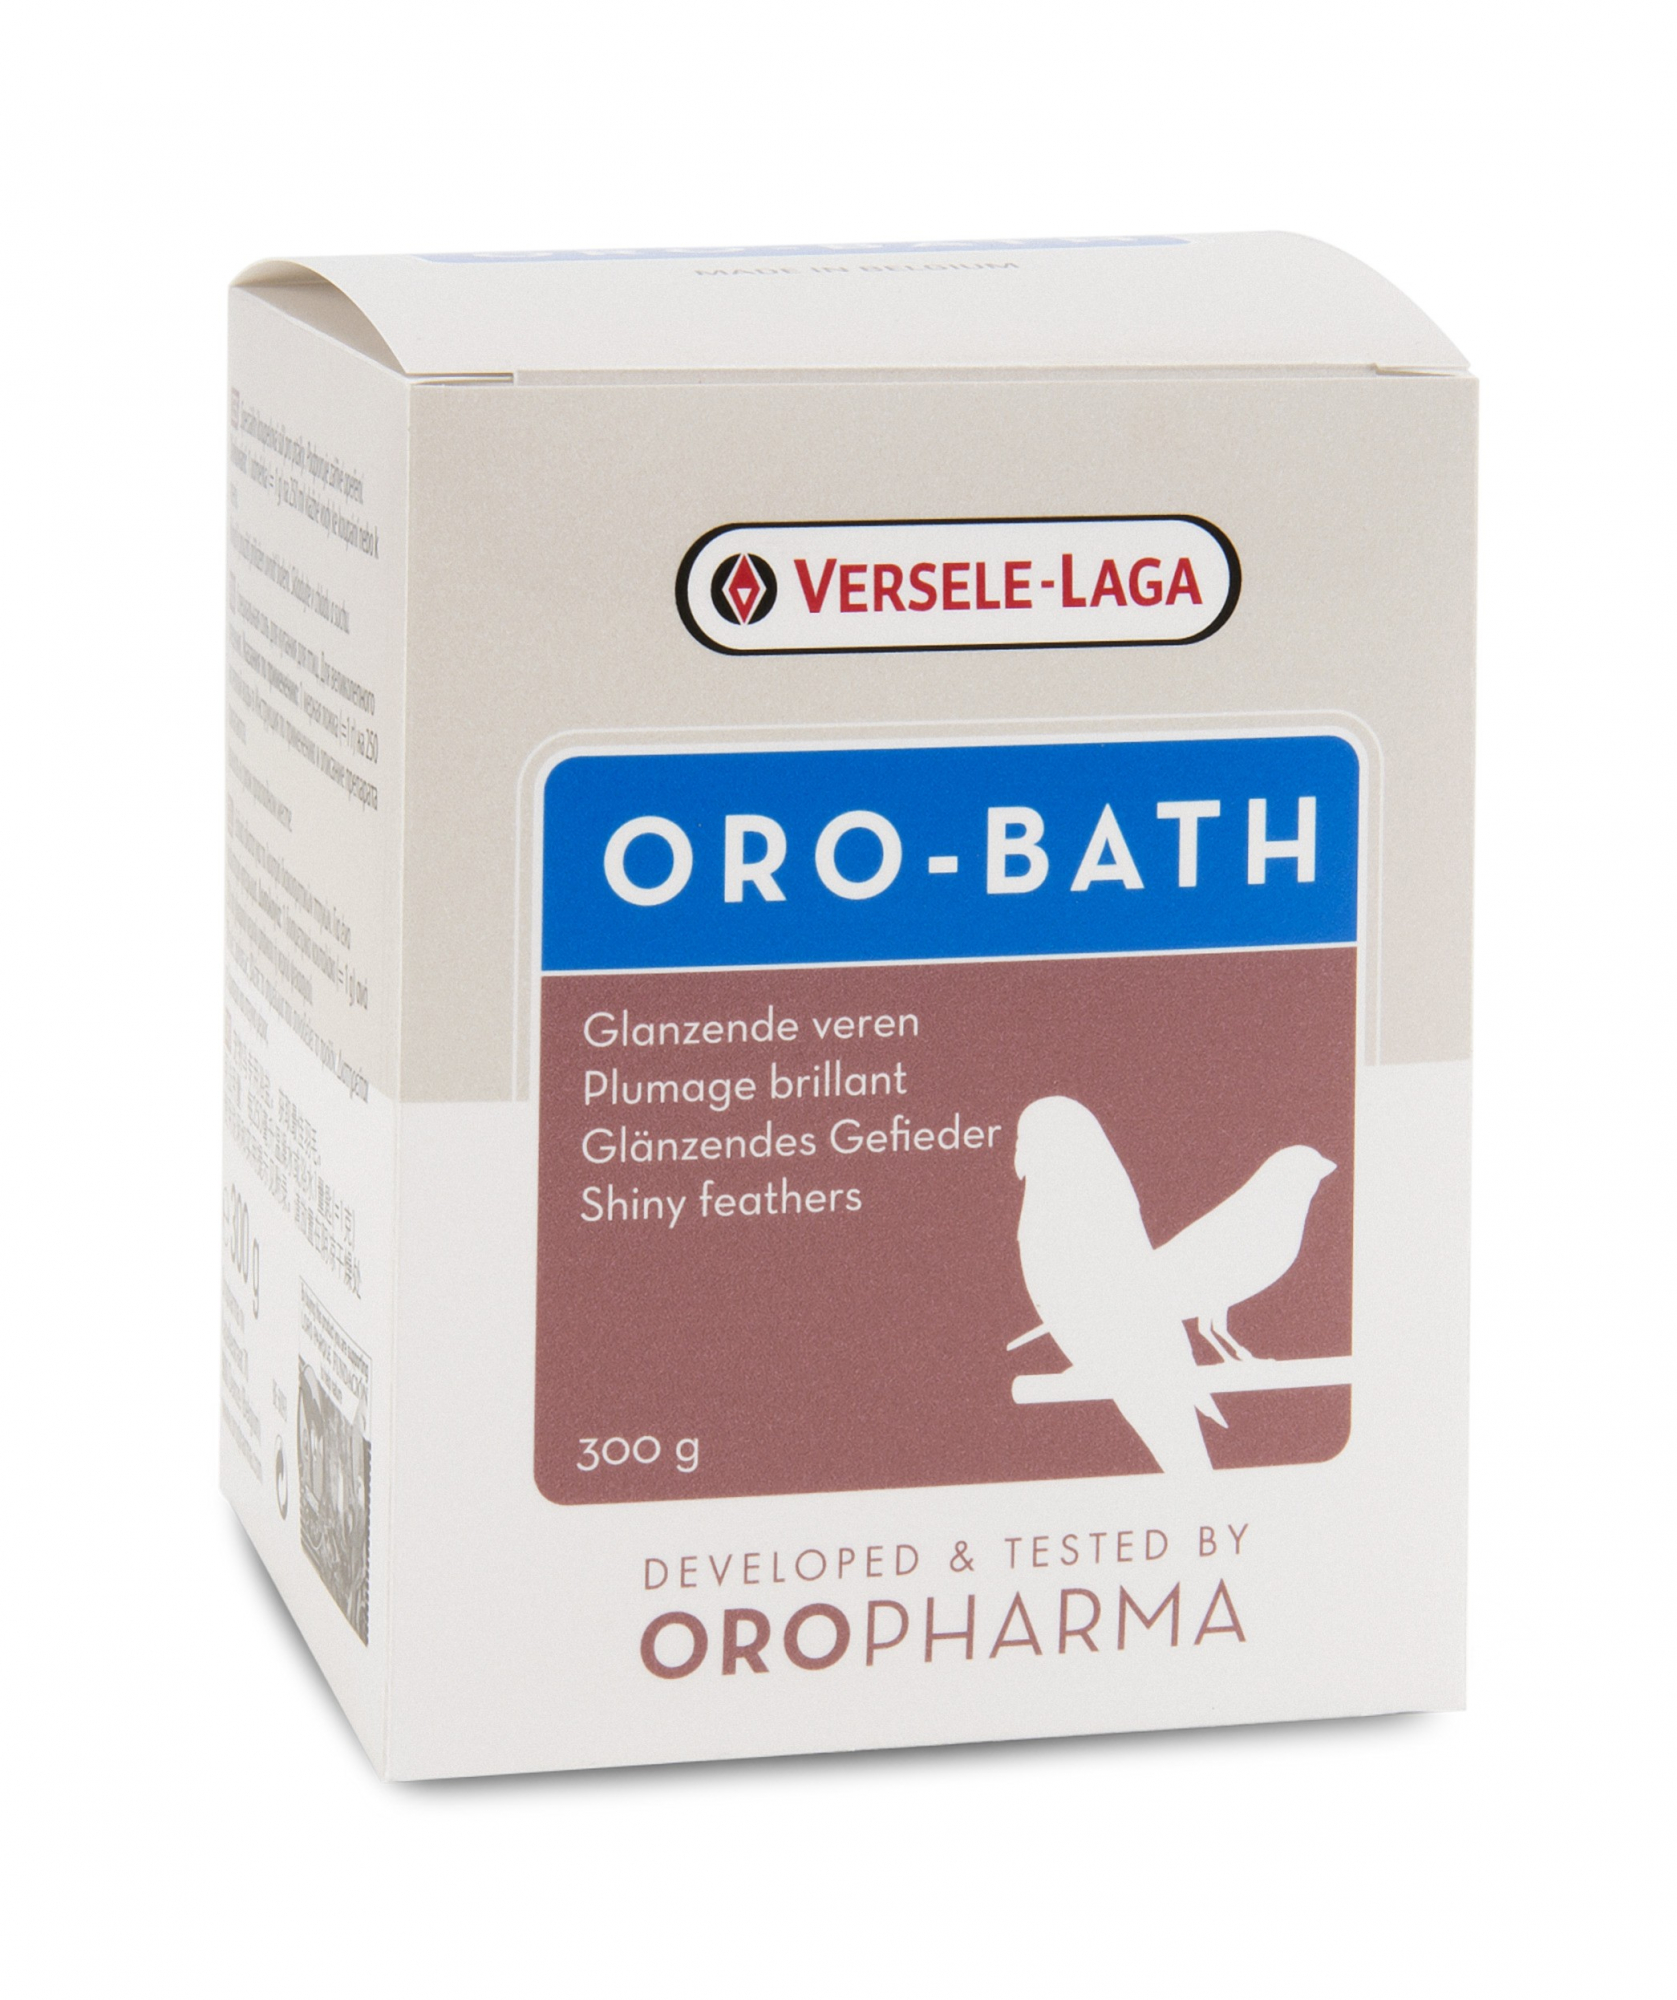 Oropharma Oro-Bath badzout voor glanzende veren